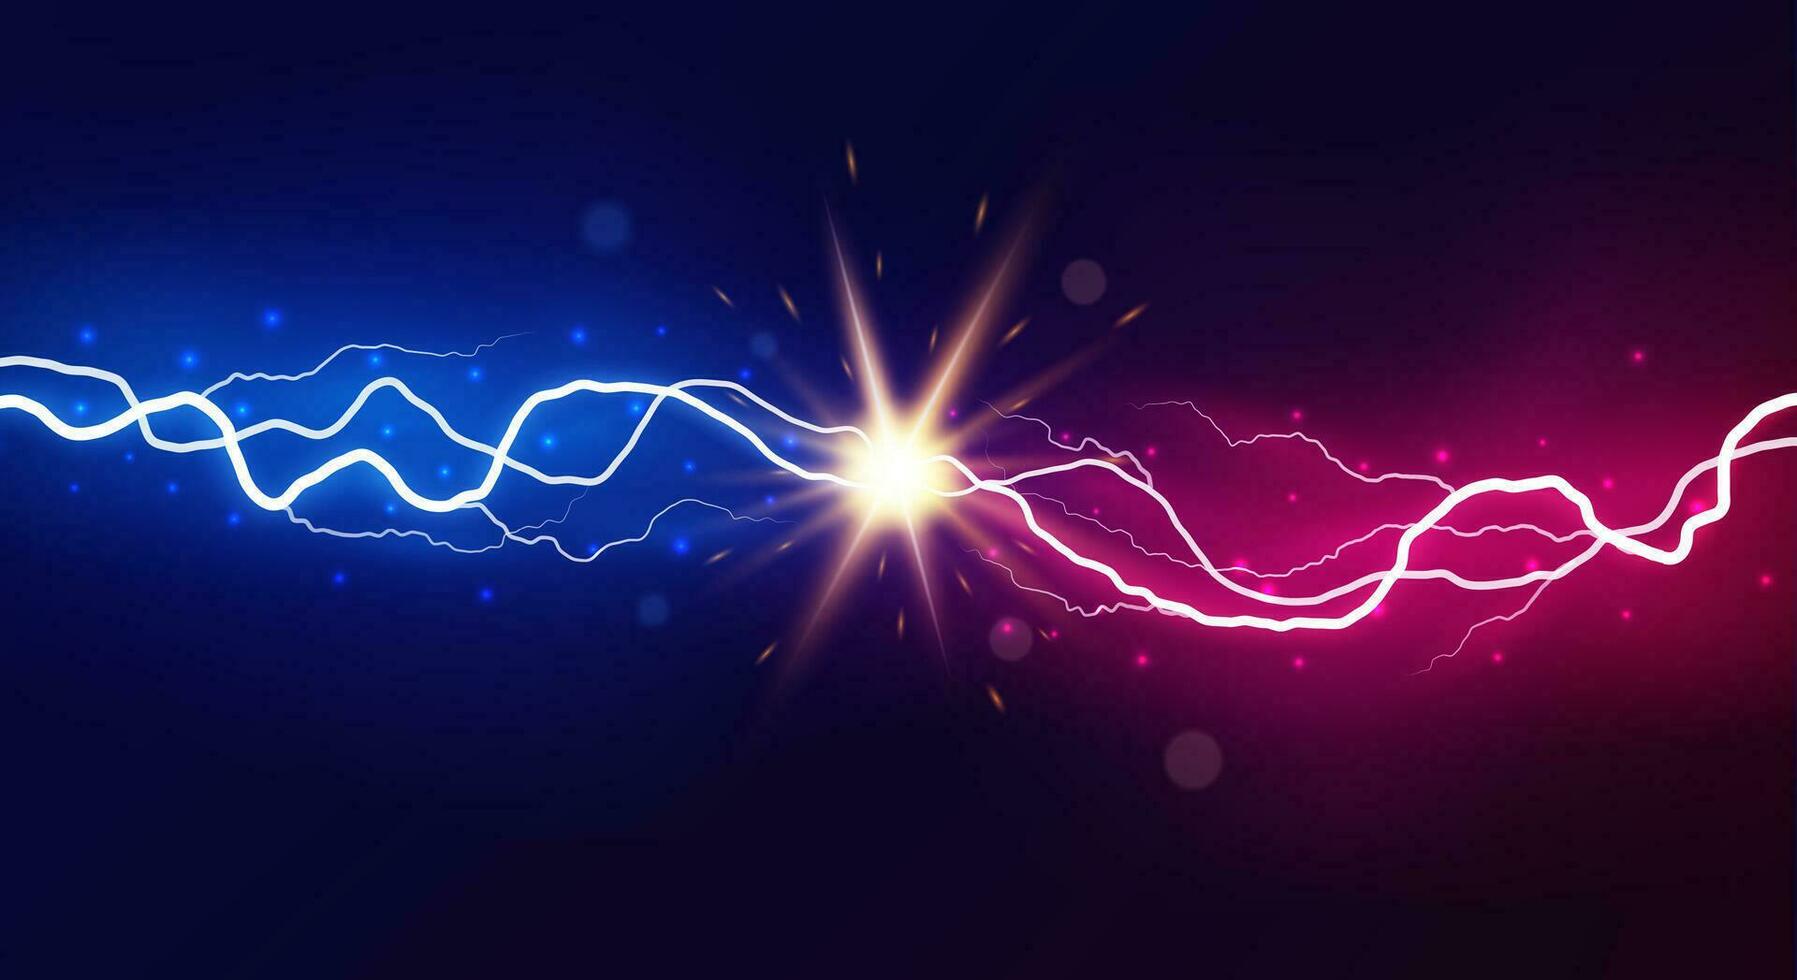 relâmpago colisão. poderoso colori relâmpagos, elétrico forças raio choque elétrico energia espumante explosão, vetor versus brilhante Projeto confronto conceito